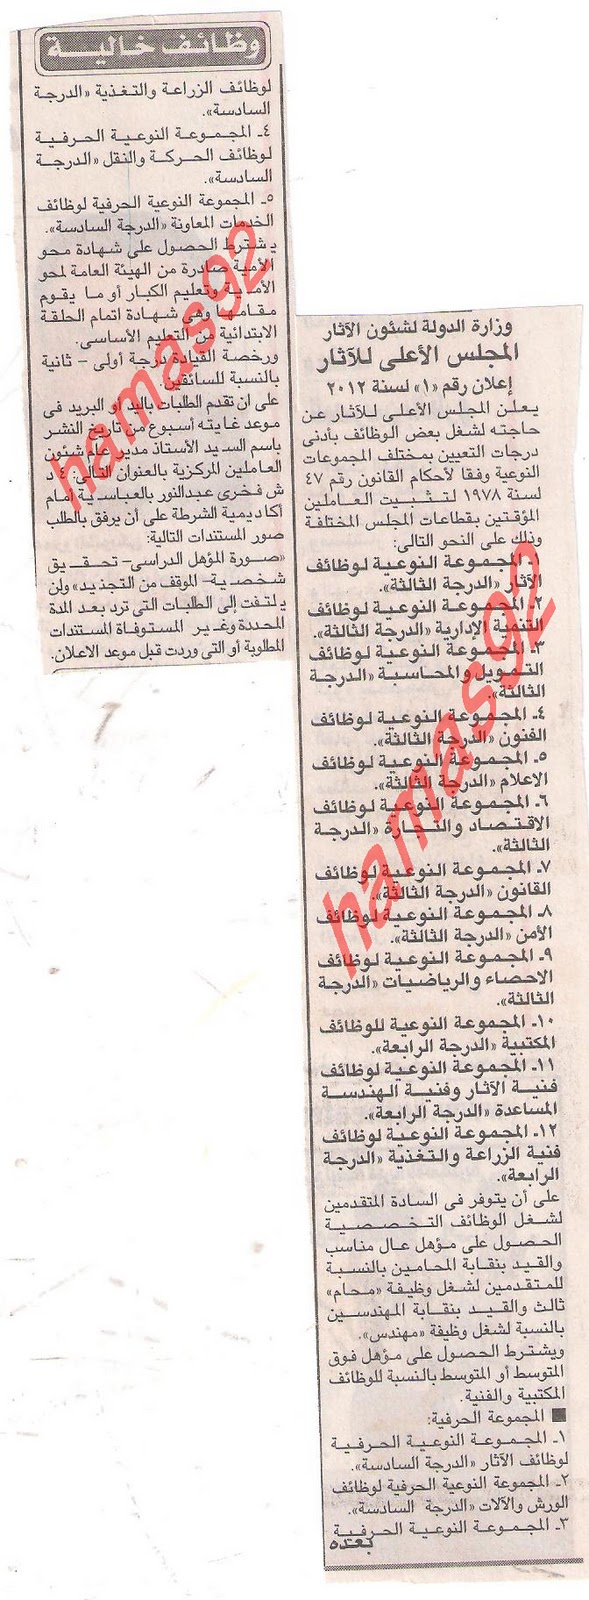 اعلانات وظائف خالية من جريدة الاهرام الاربعاء 4\1\2012 , وظائف المجلس الاعلى للأثار  Picture+001